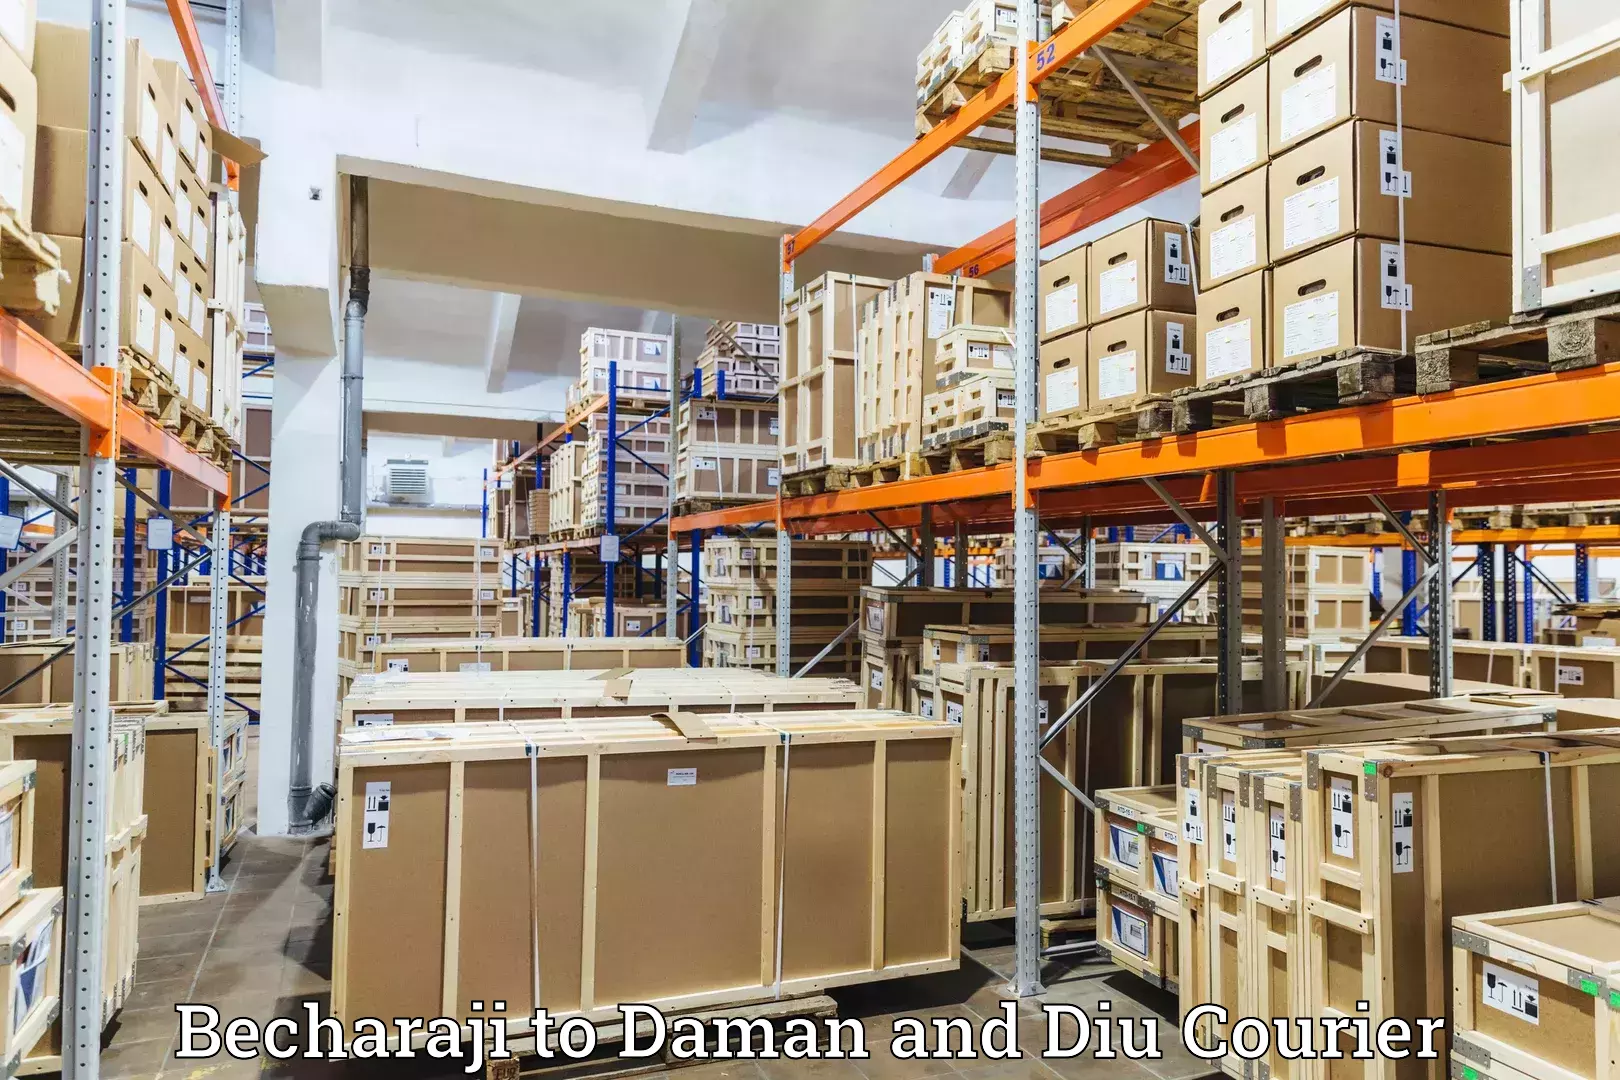 Global logistics network Becharaji to Daman and Diu